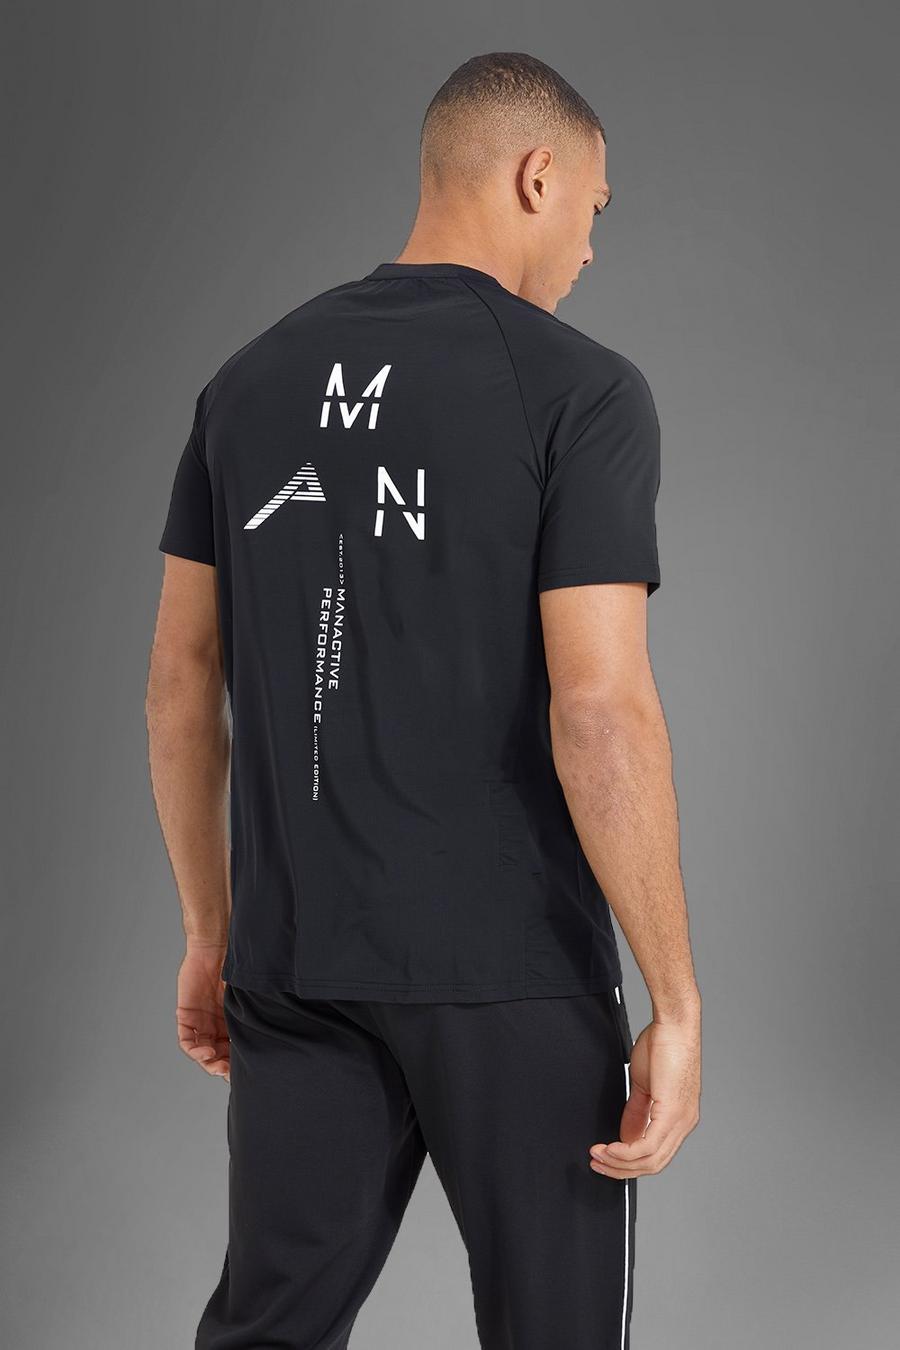 Camiseta MAN Active deportiva con estampado reflectante en la espalda, Black